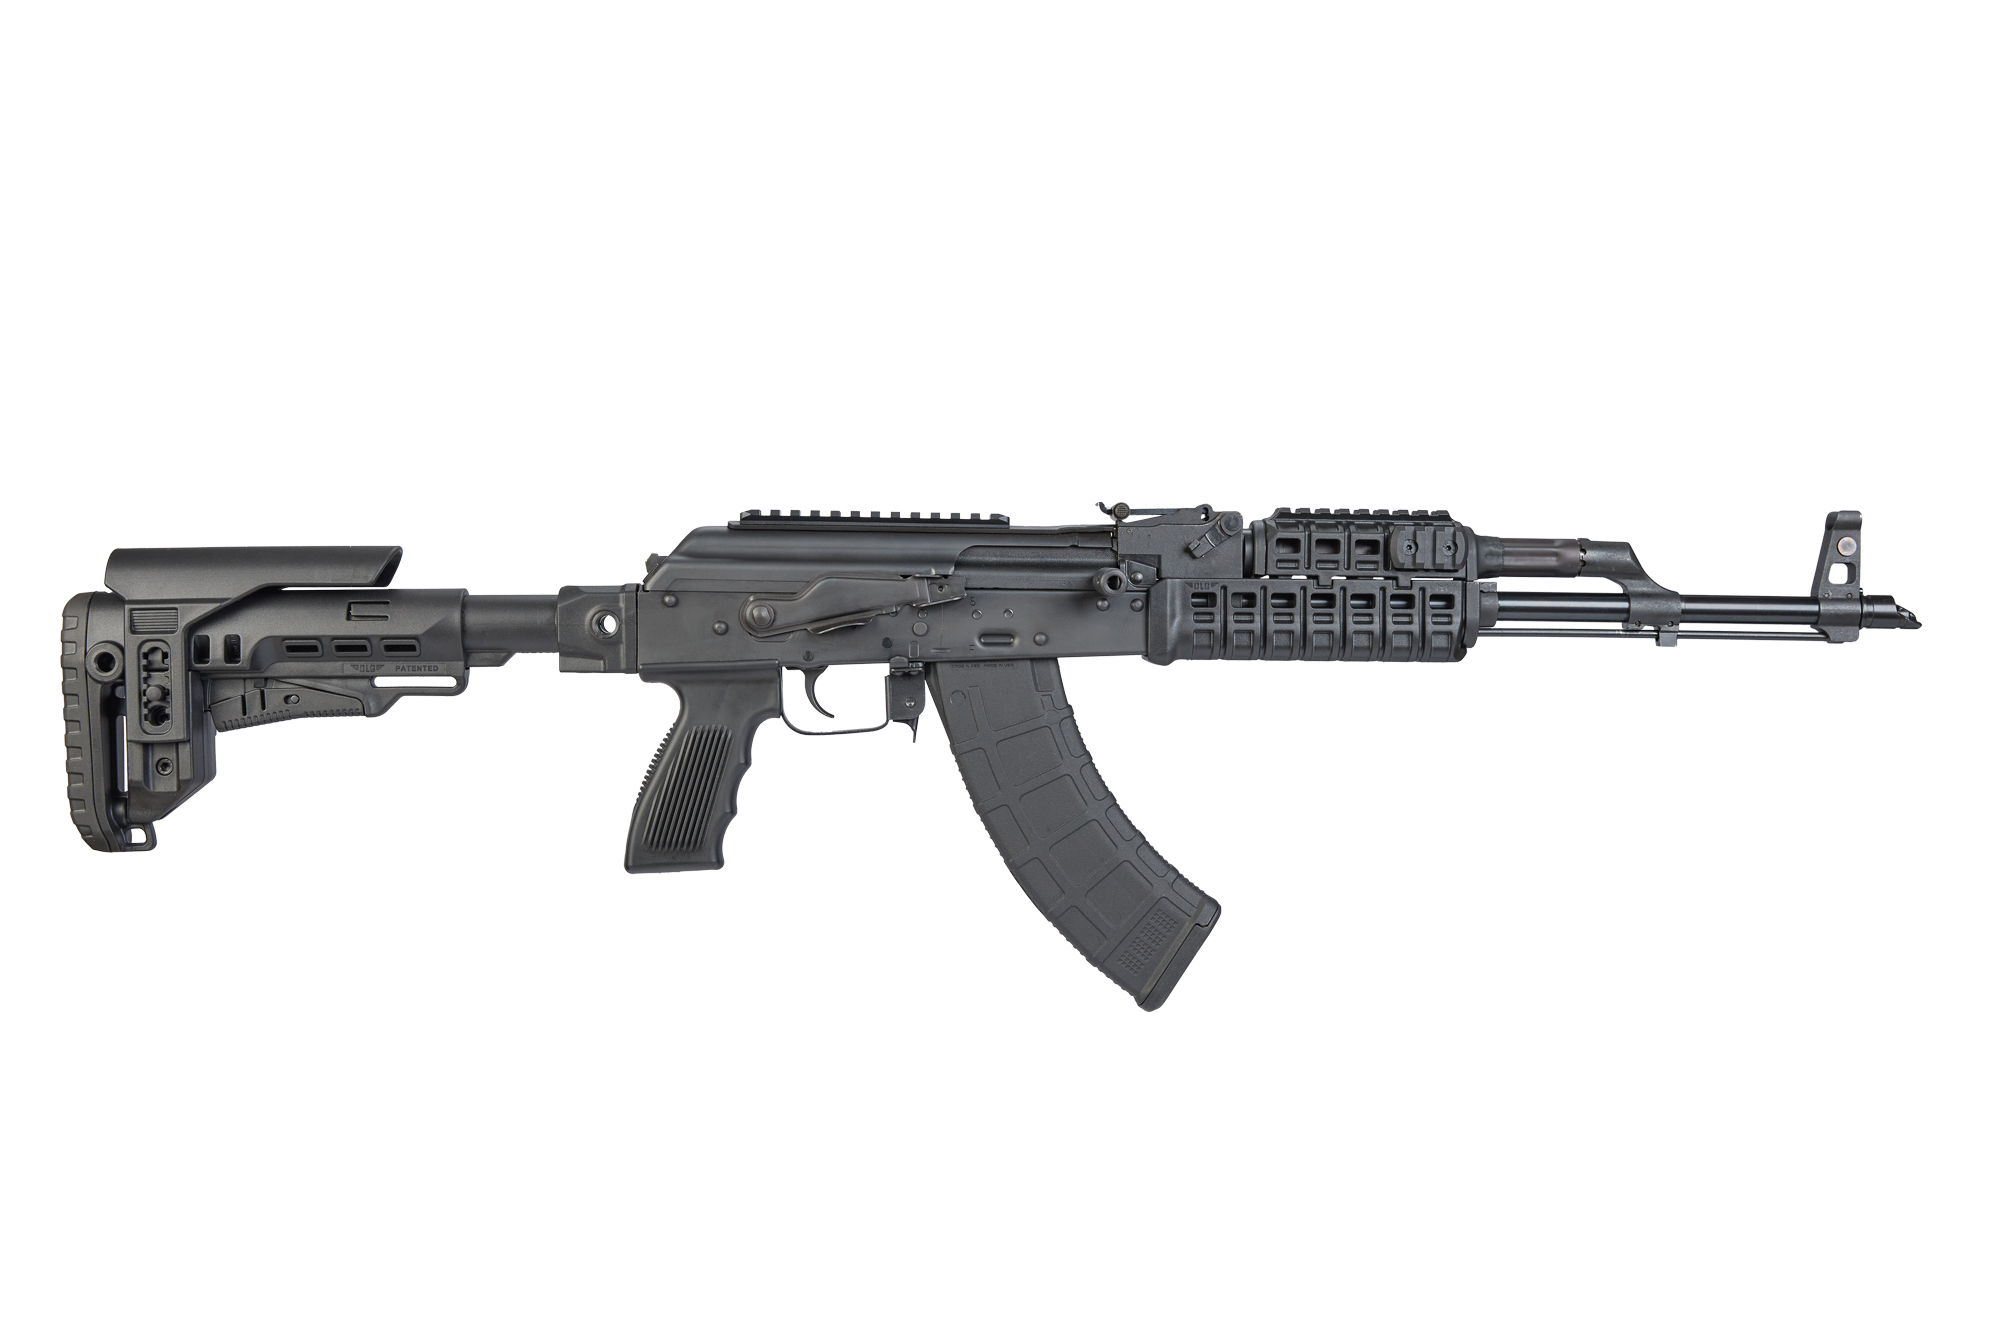 RAK1 Tactical (RAK1T) semi-automatic rifle cal. 7.62x39